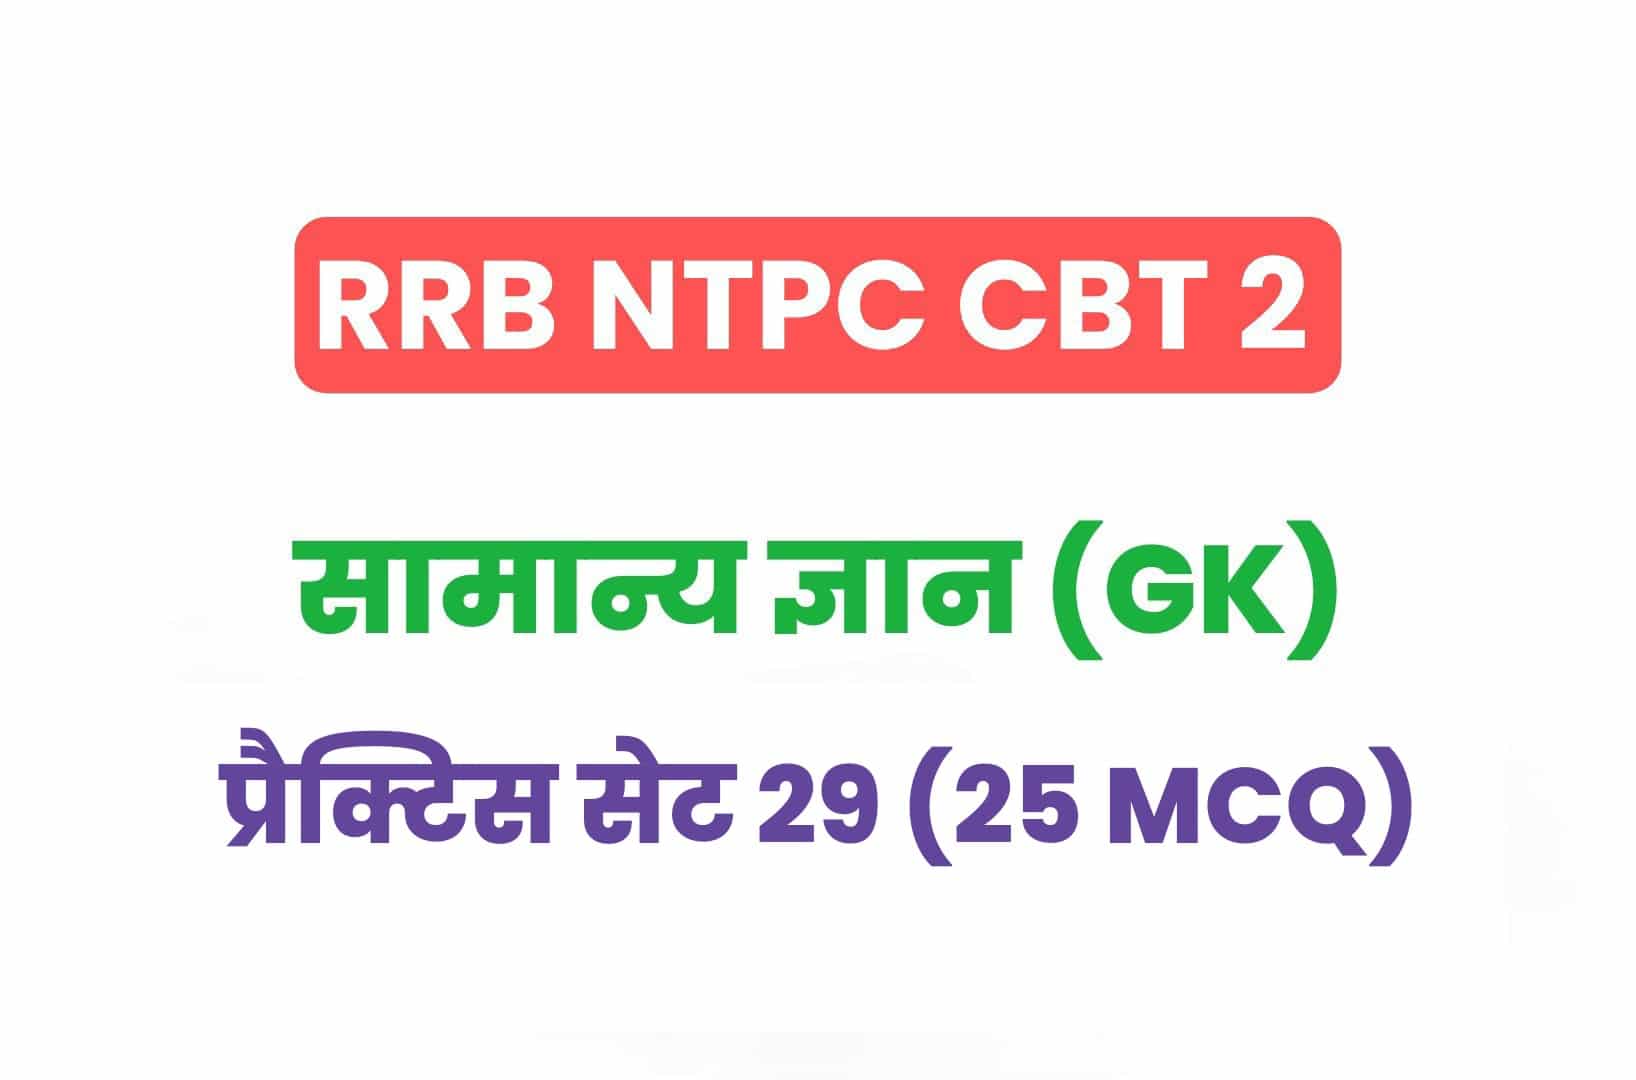 RRB NTPC CBT 2 GK प्रैक्टिस सेट 28: सामान्य ज्ञान के महत्वपूर्ण प्रश्नों का करें अध्ययन